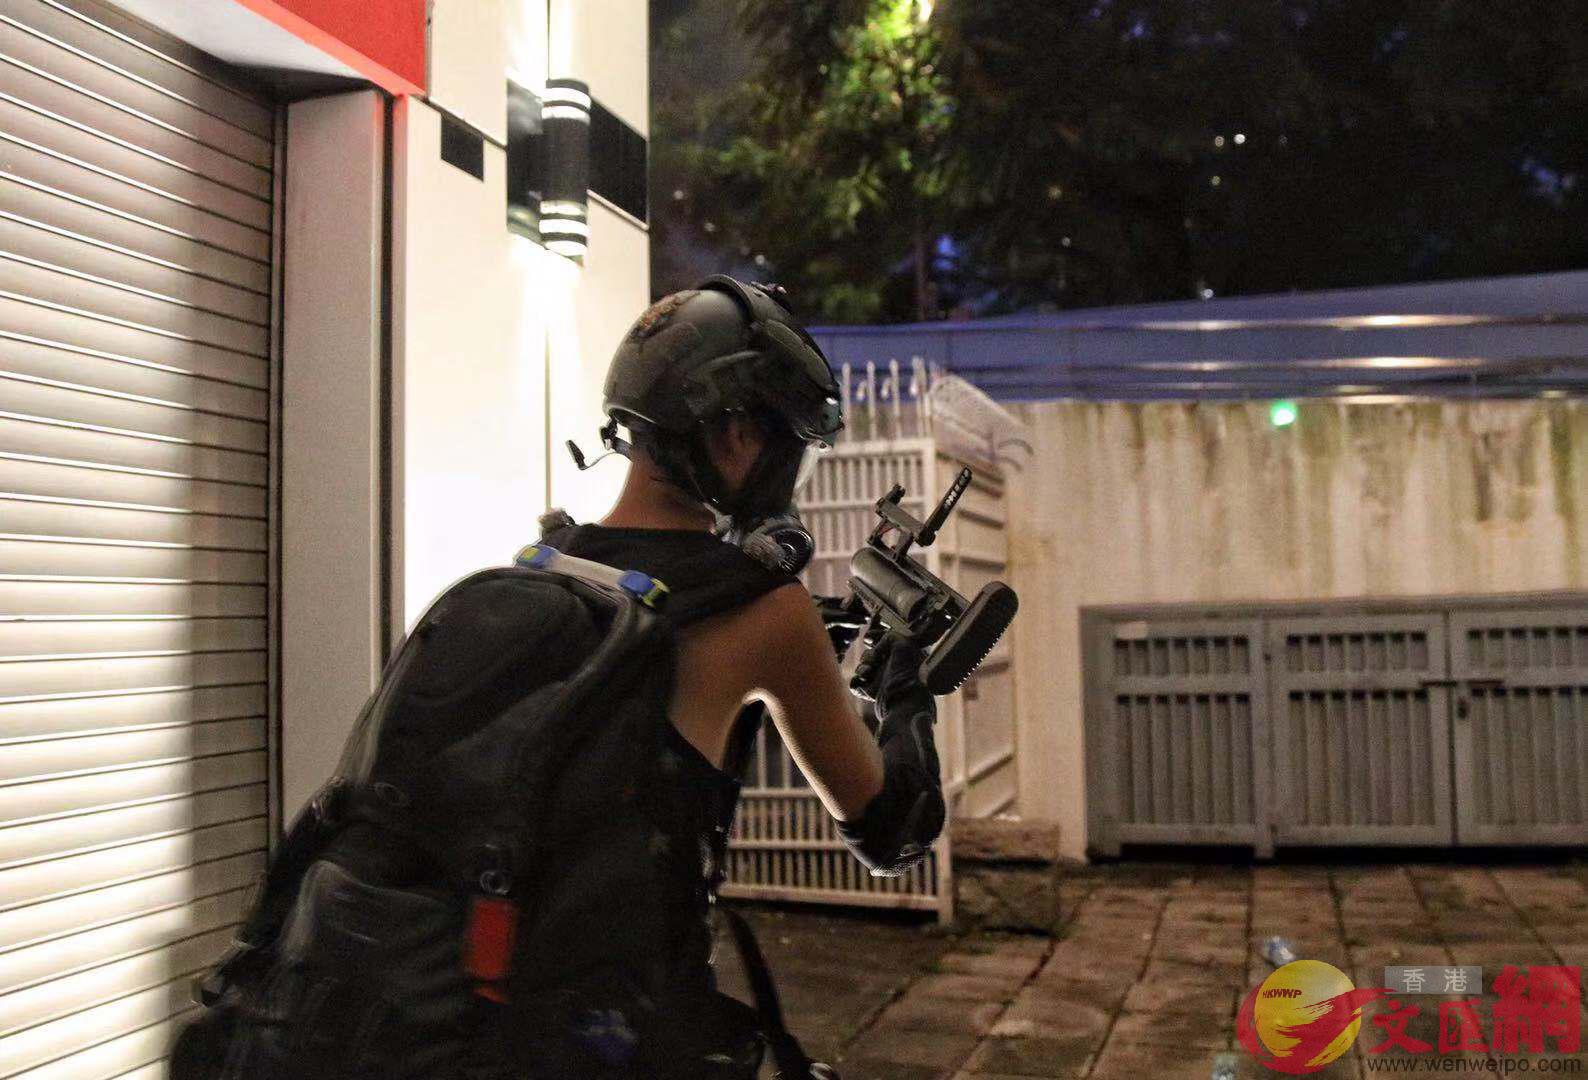 暴力升级!香港暴徒扔汽油弹,带"枪"袭警 市民吁止暴制乱